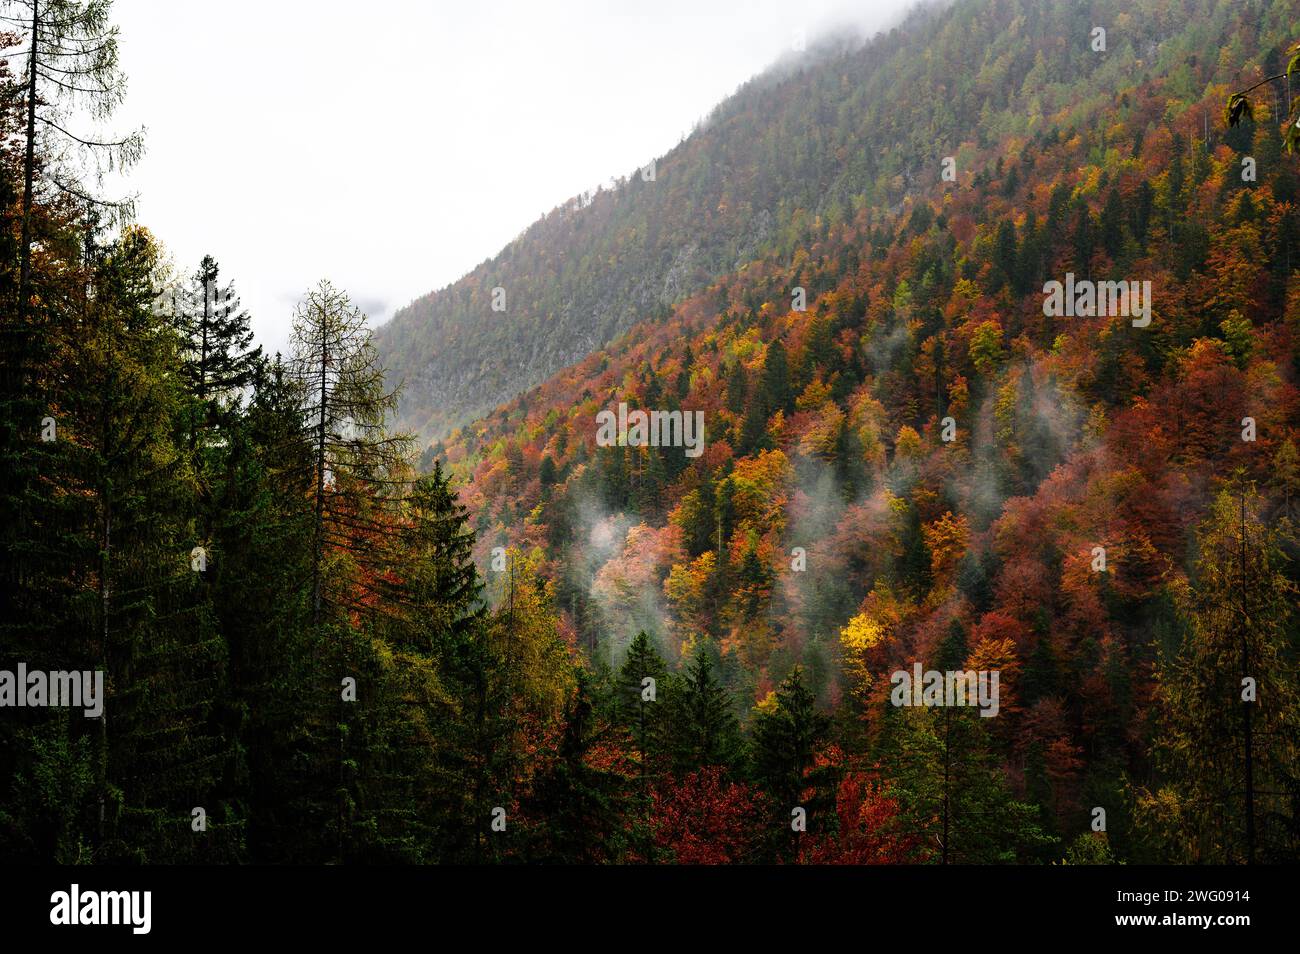 Berg in der Nähe von Bled, Slowenien, herbstwald, grün, orangefarbene und braune Blätter, etwas Nebel Stockfoto